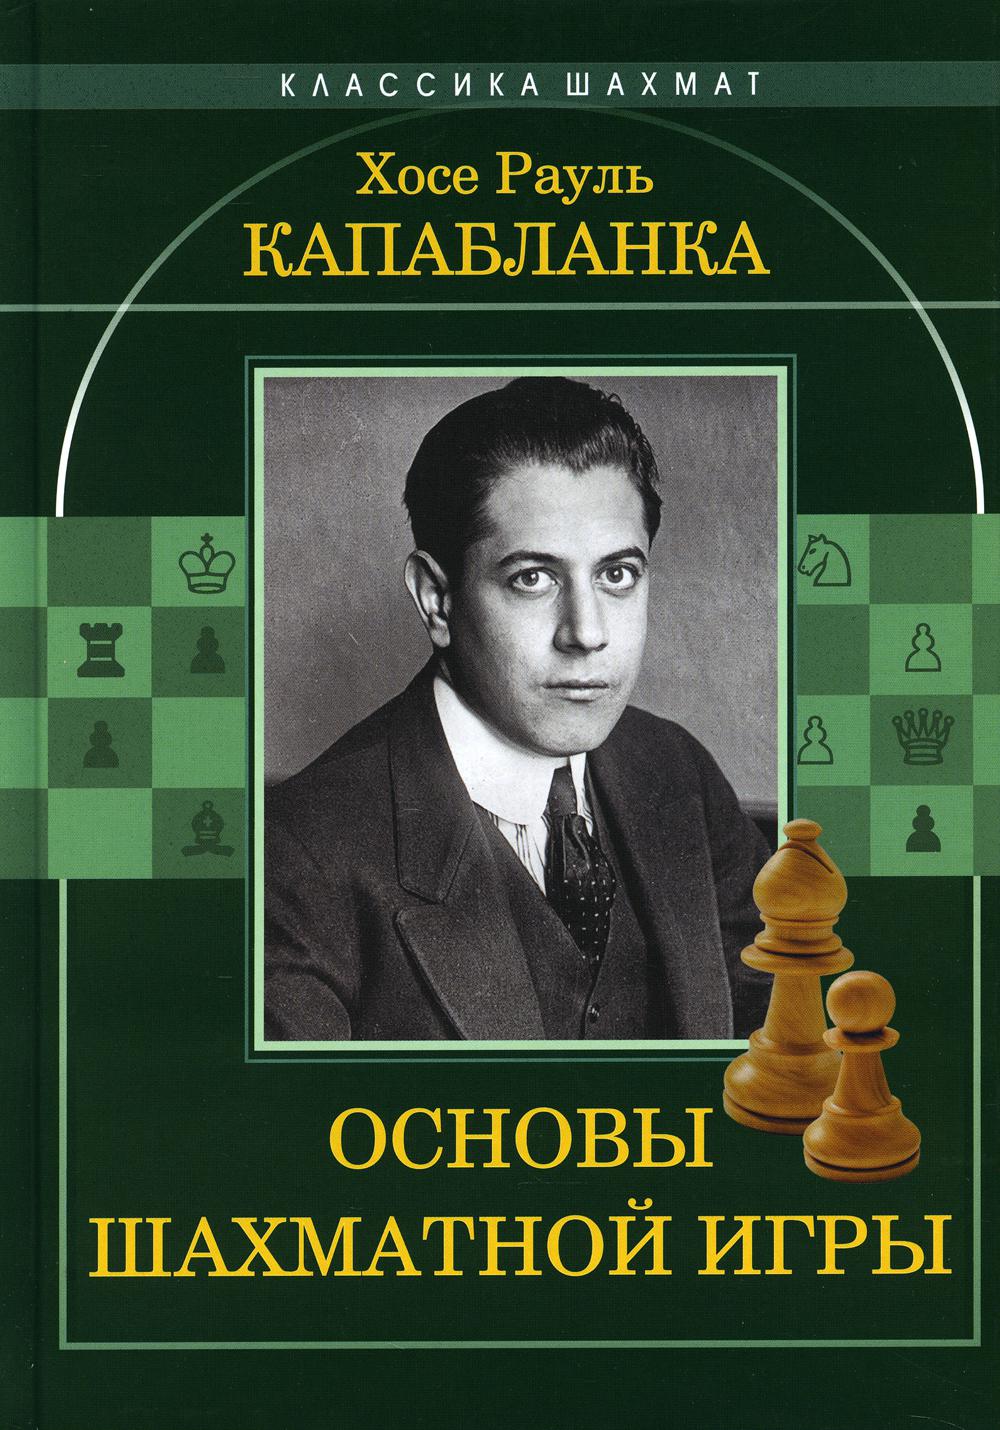 фото Книга основы шахматной игры издательство калиниченко